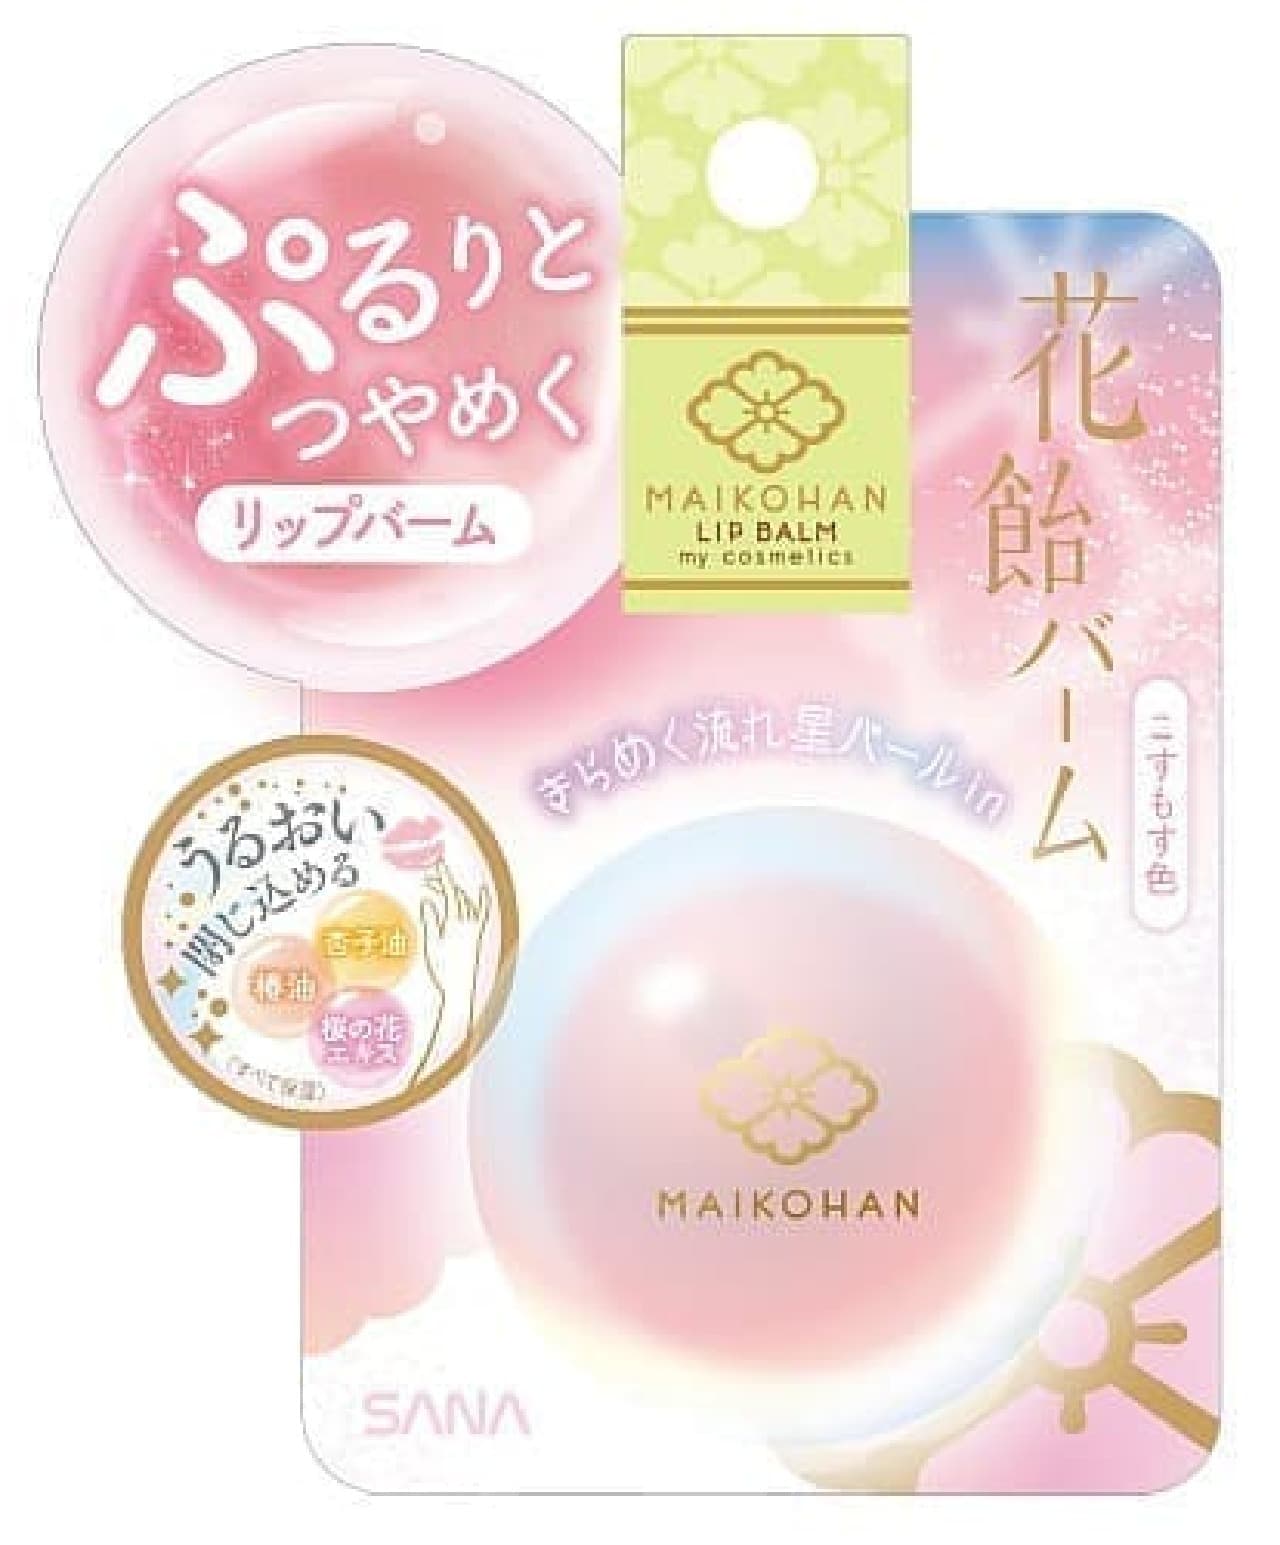 Maiko Hankara Lip Balm Limited Edition "Haname Balm"